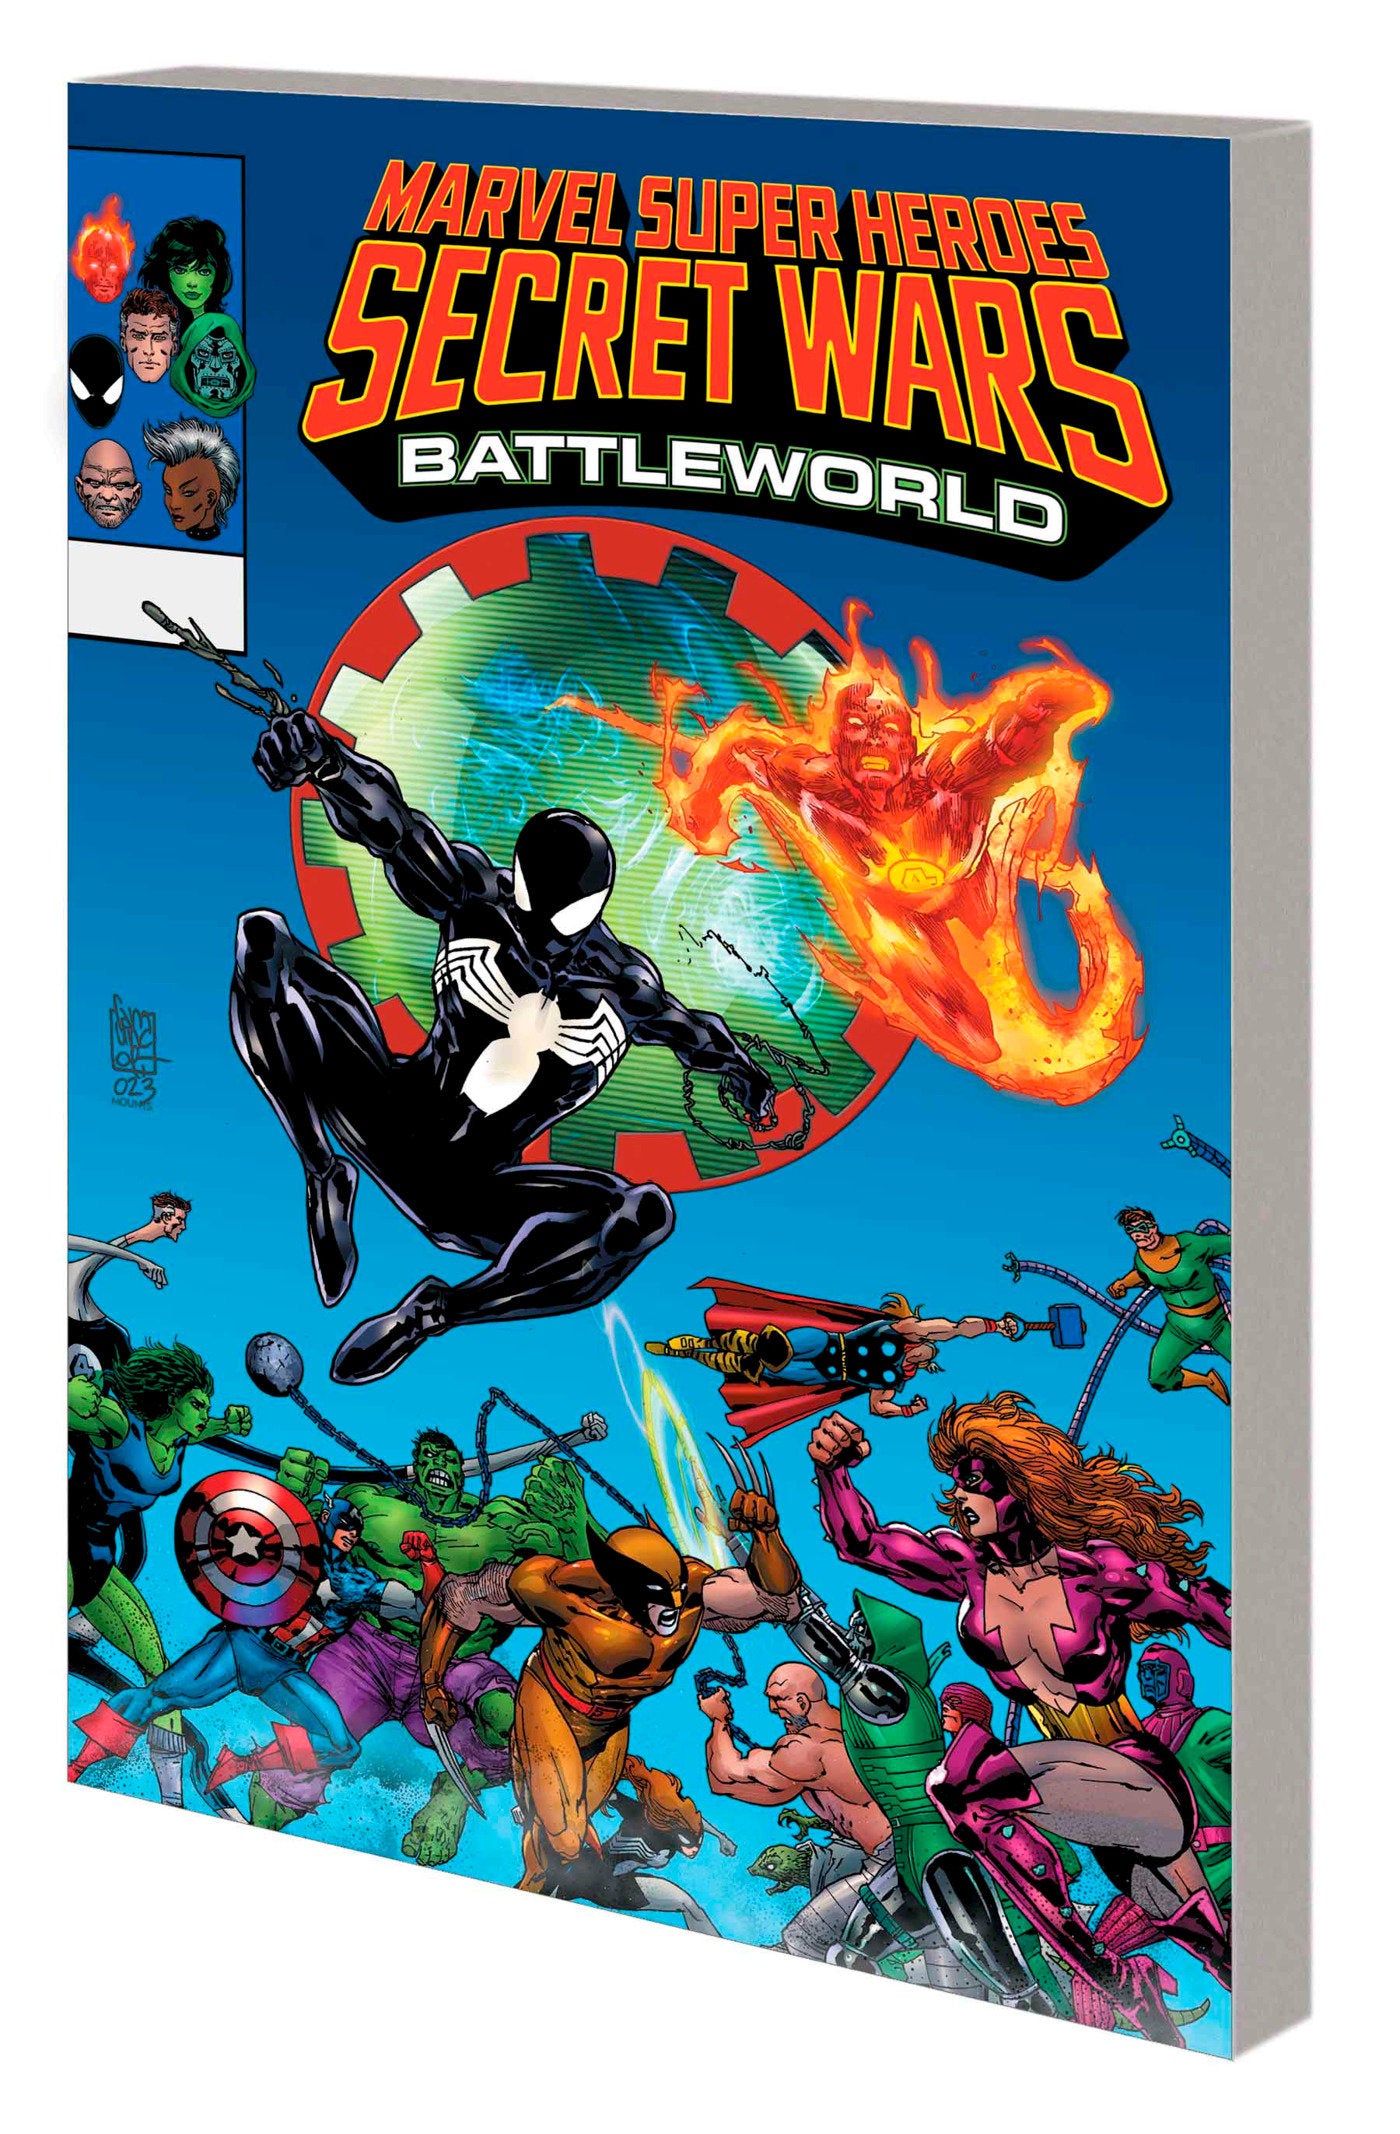 MARVEL SUPER HEROES SECRET WARS: BATTLEWORLD - Release Date:  5/7/24